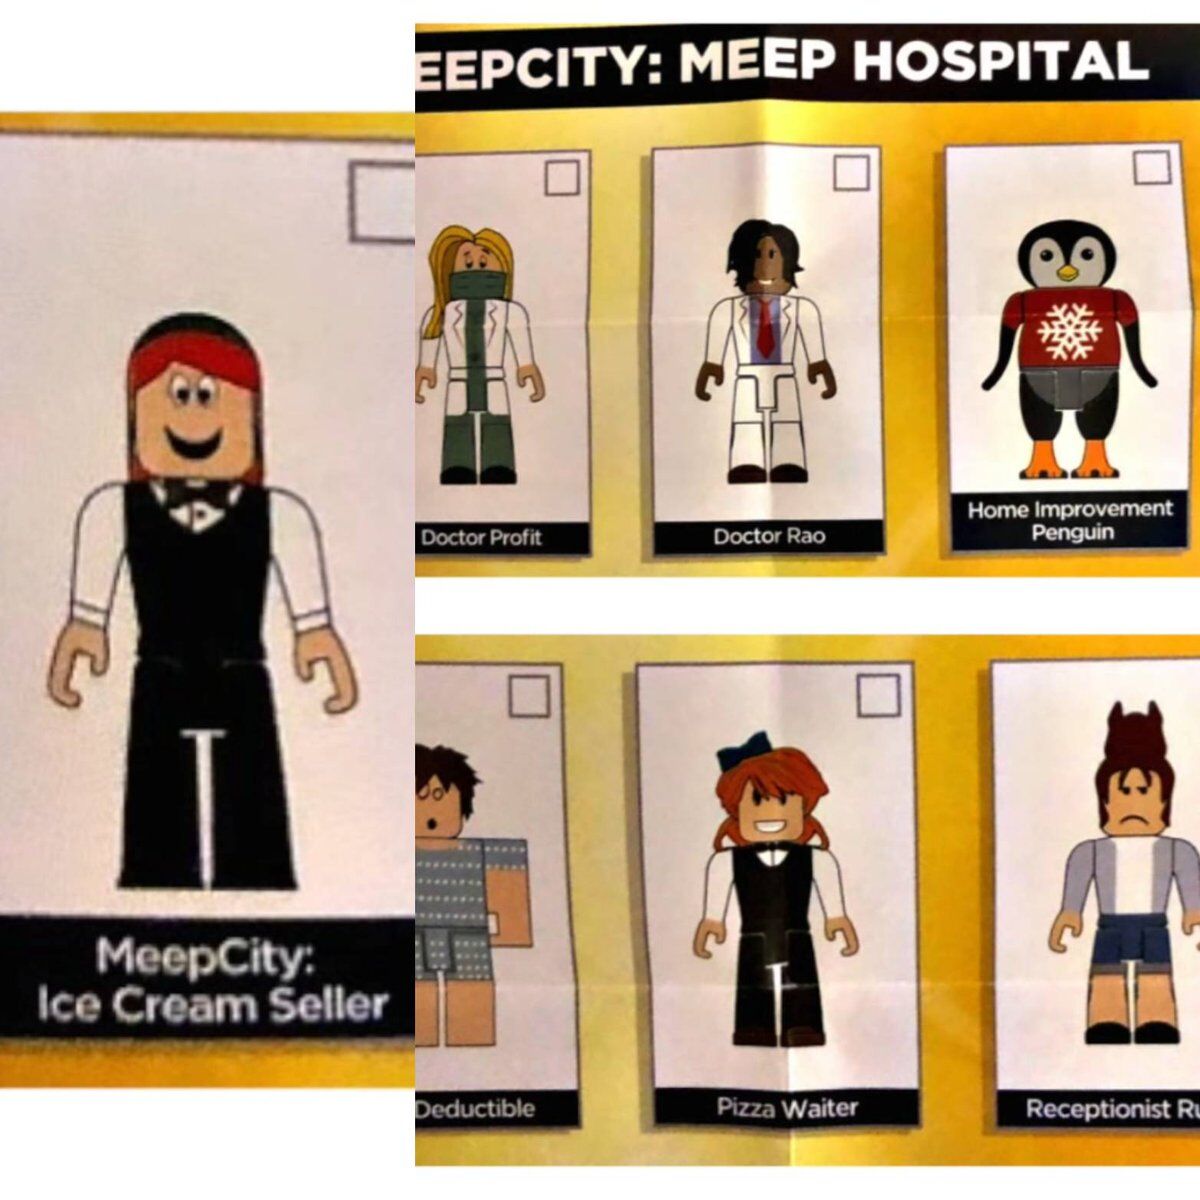 Hospital, MeepCity Wikia